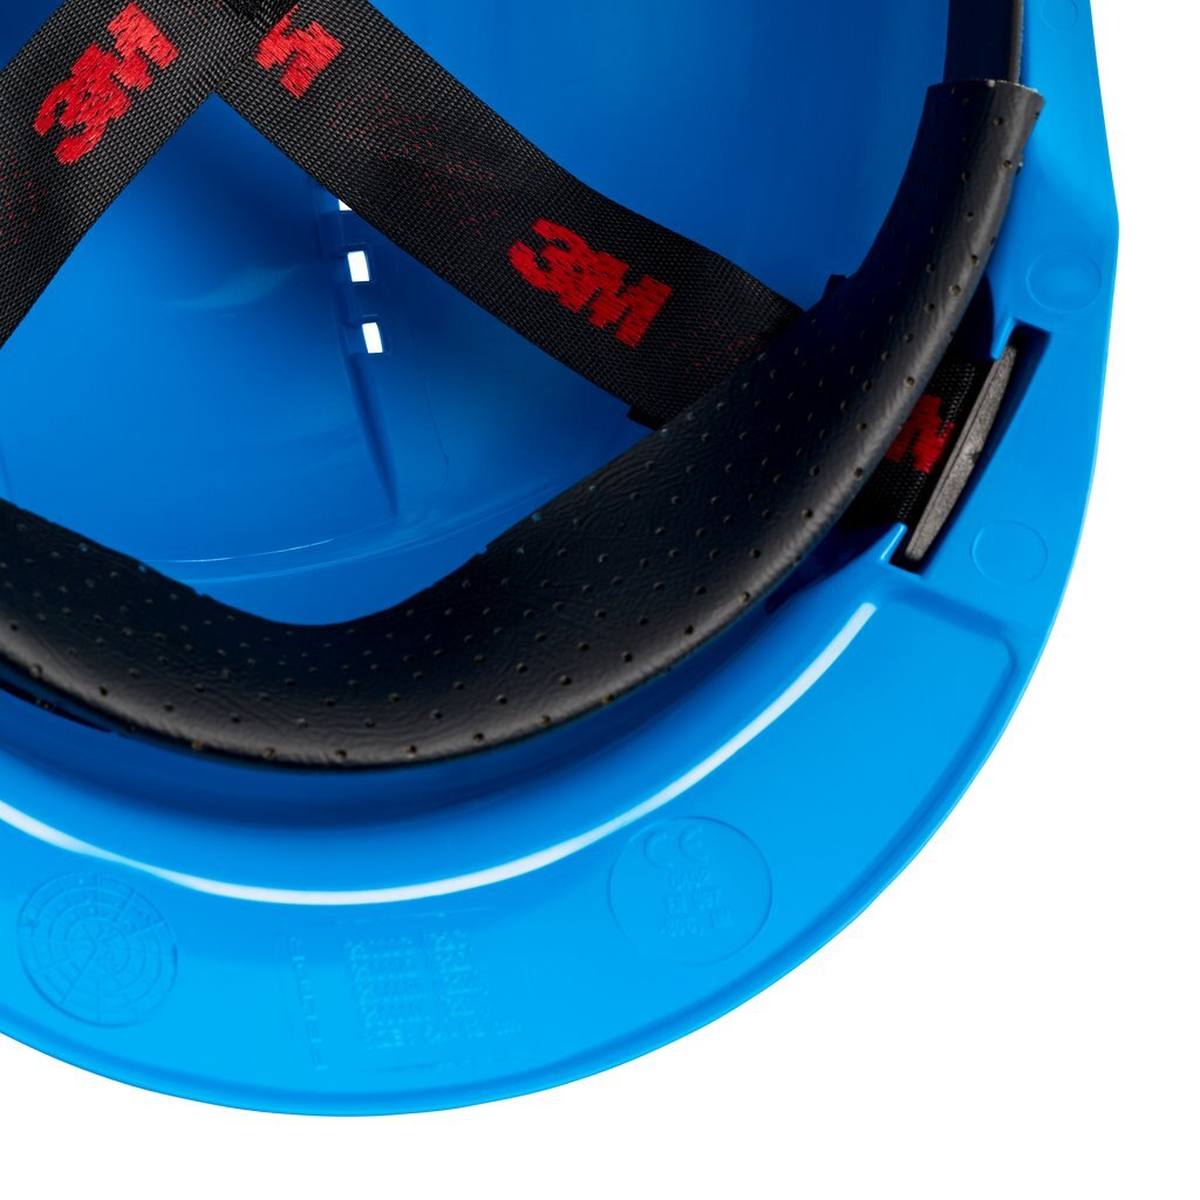 elmetto di sicurezza 3M G3000 G30CUB di colore blu, ventilato, con uvicatore, pinlock e fascia antisudore in plastica